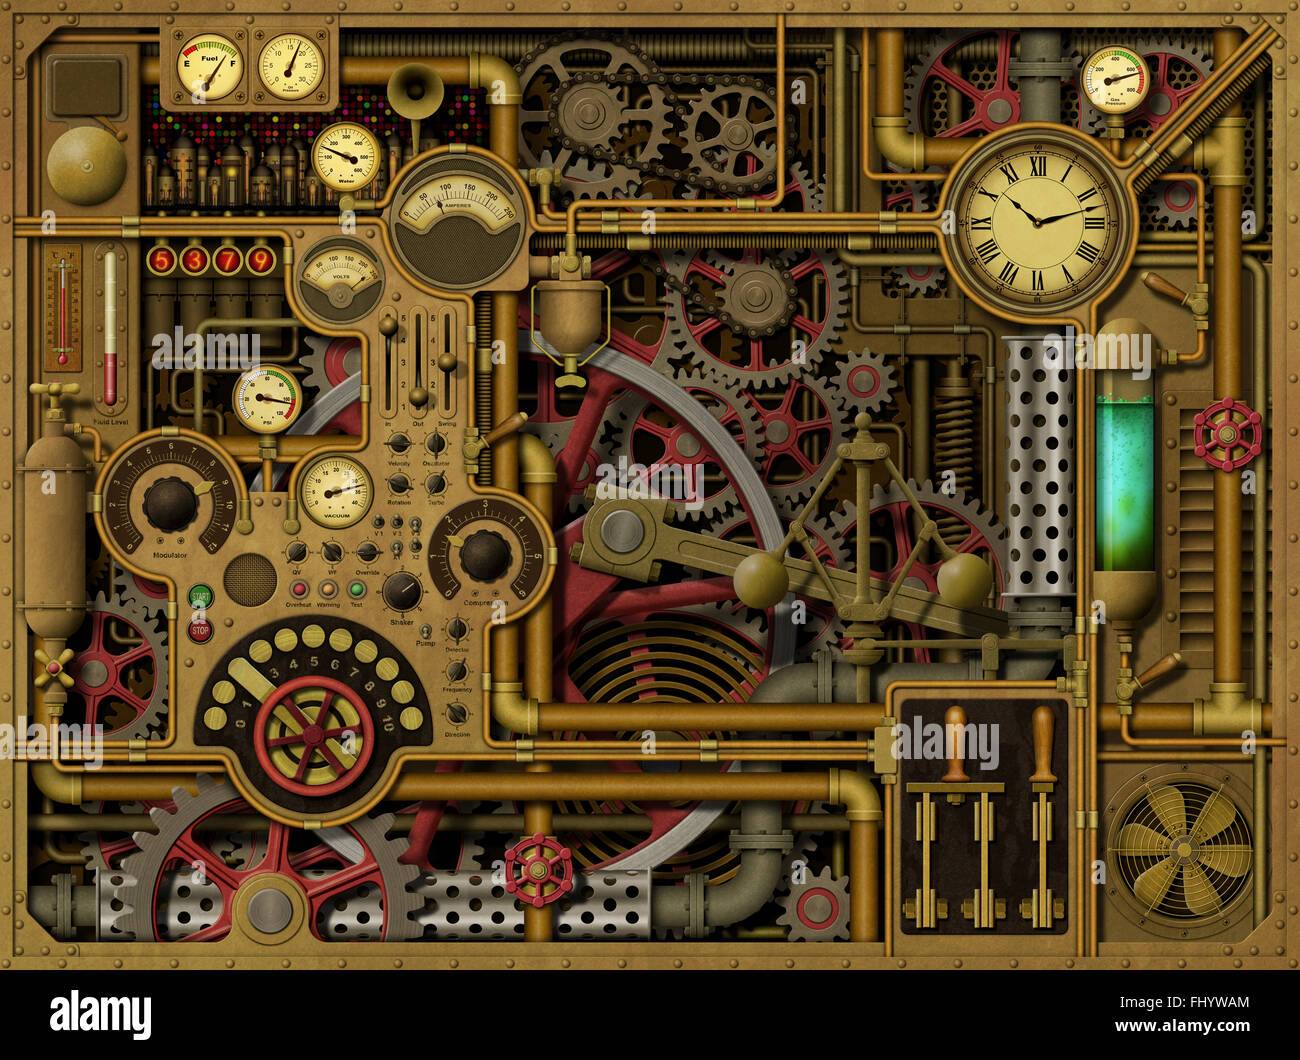 Steampunk Steam Punk Antique Machine Technology Stock Illustration  775485289